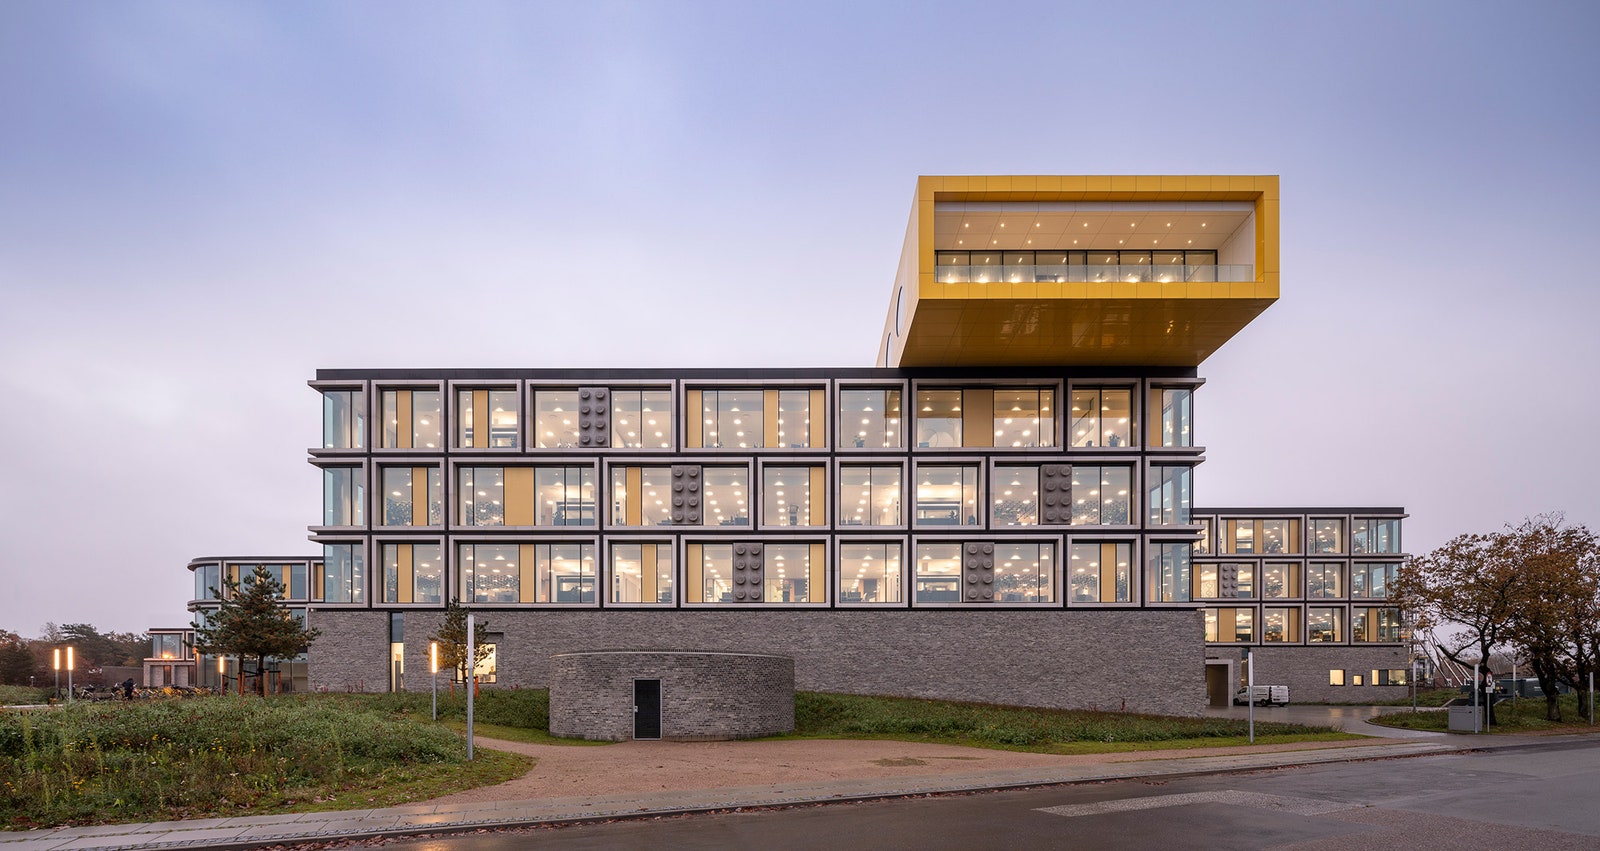 Новая штабквартира LEGO в Дании 52 000 м²